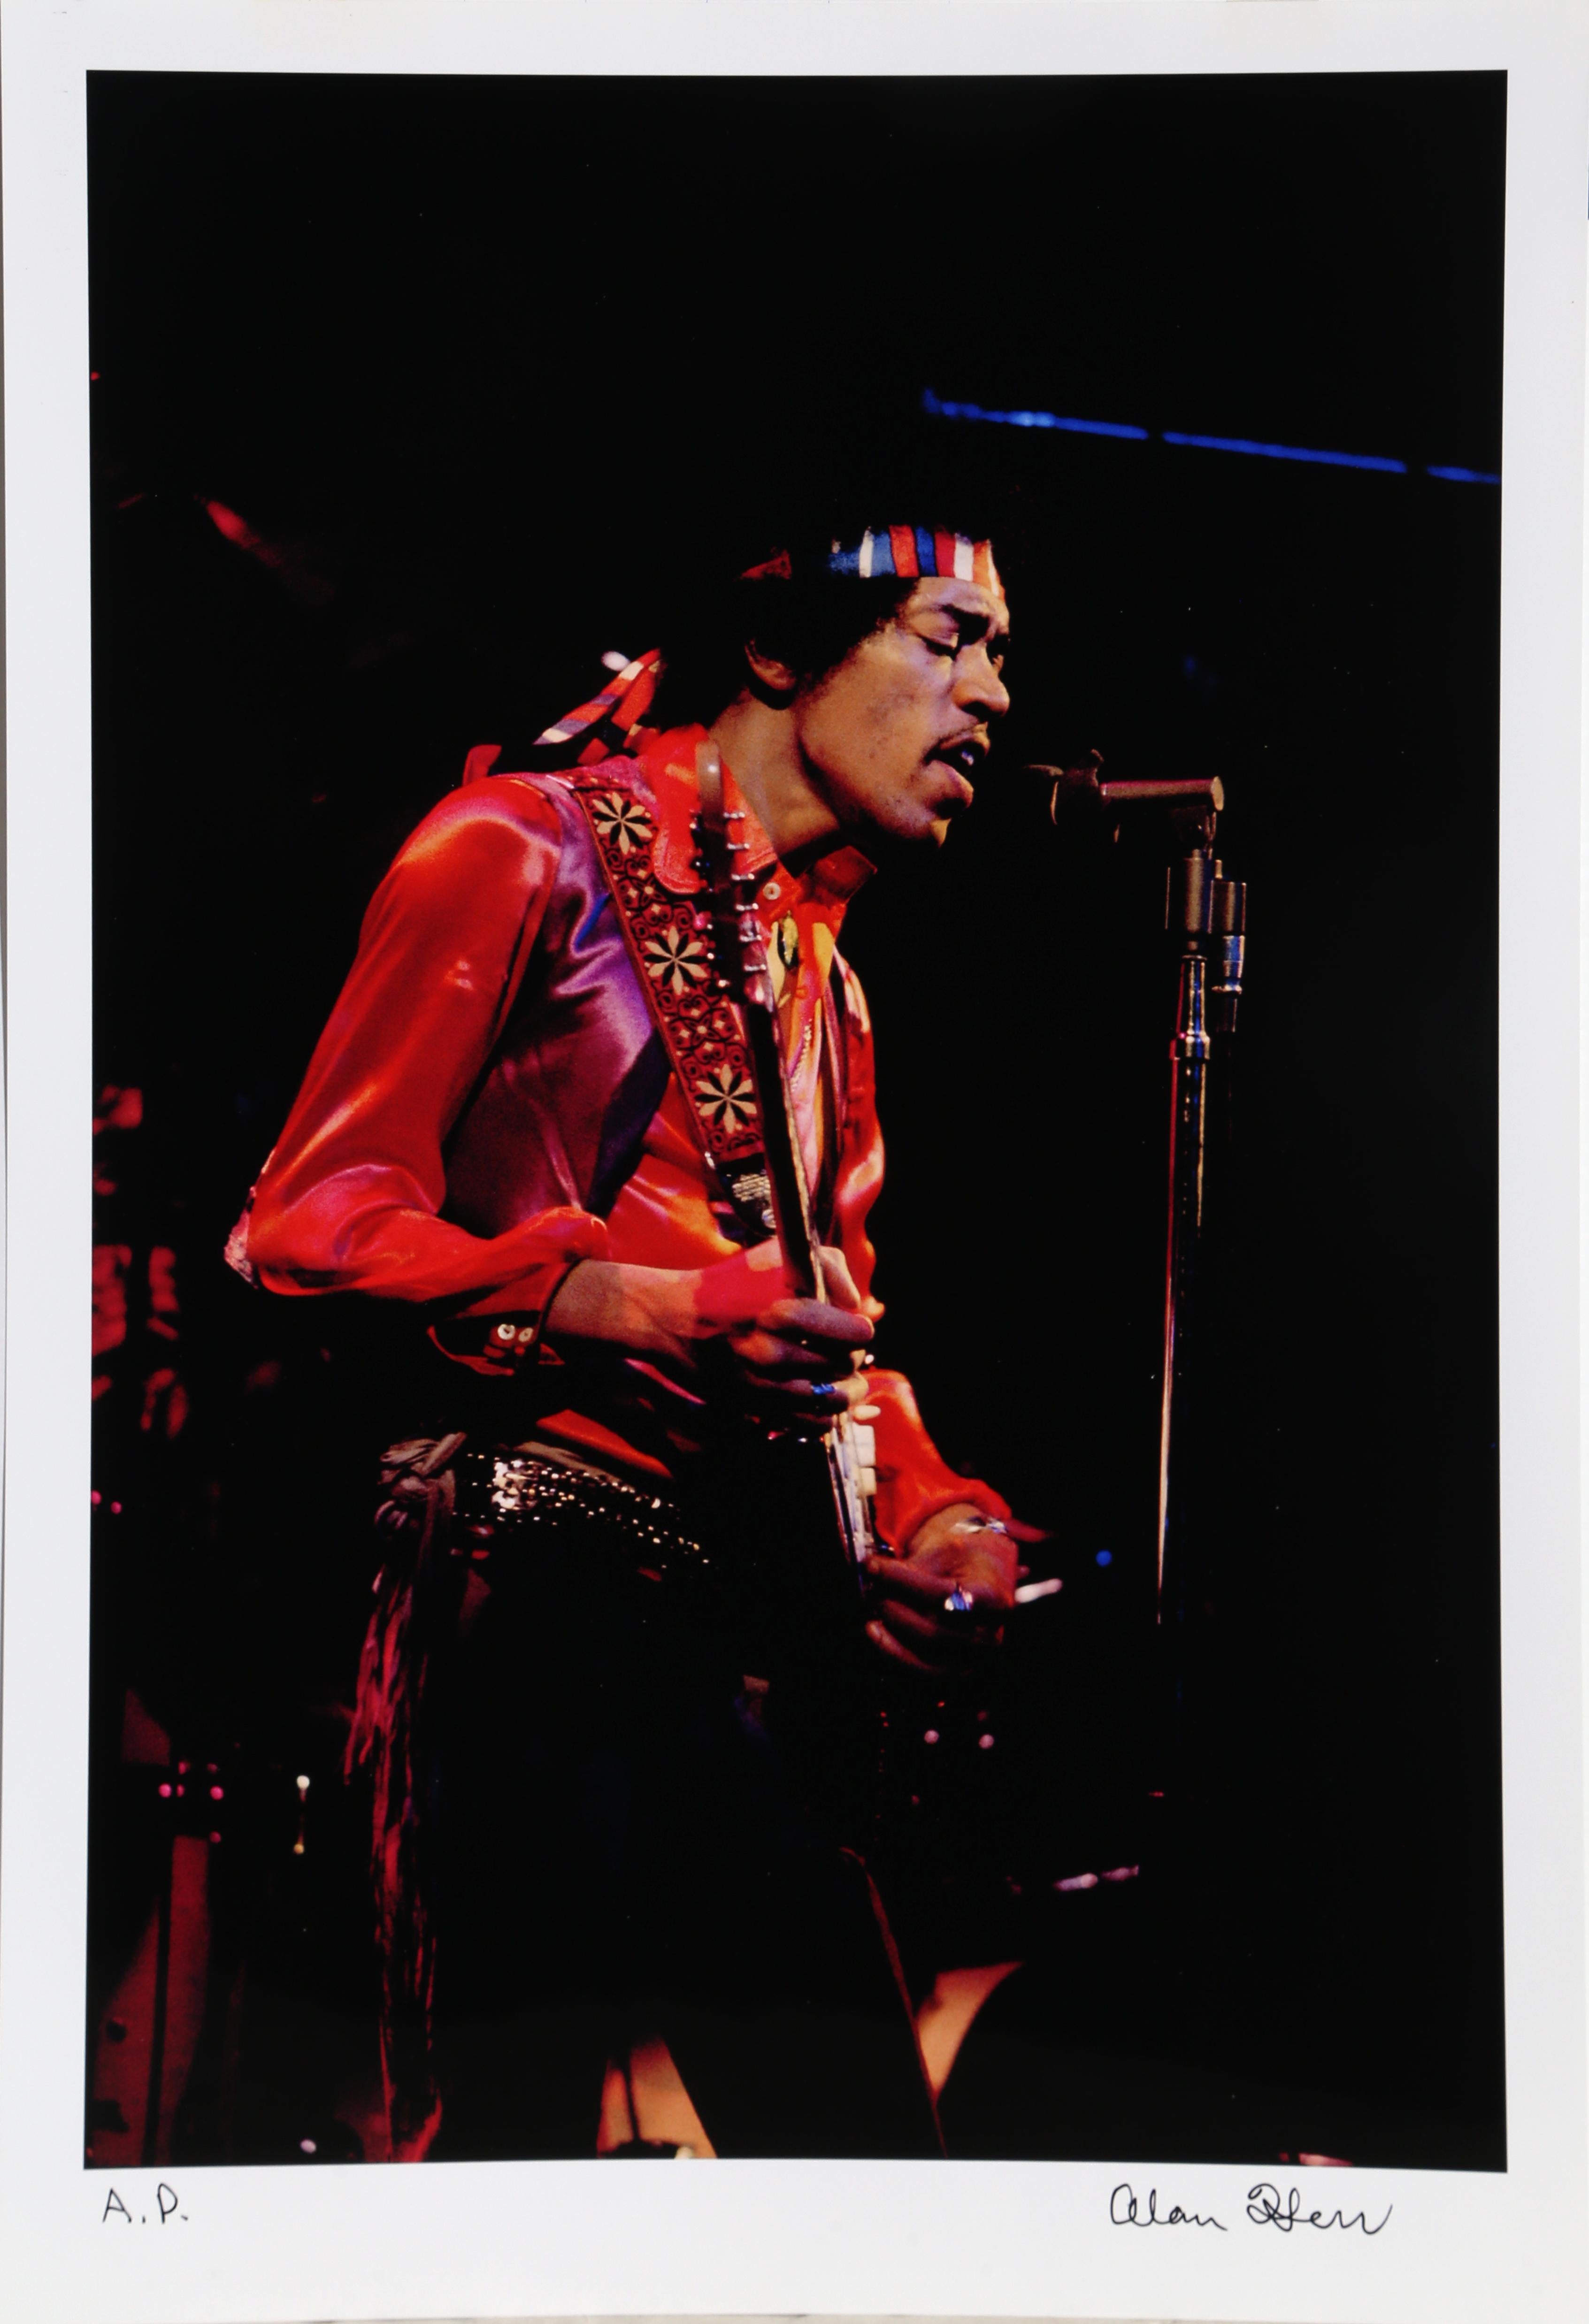 Die erste Ausstellung von Jimi Hendrix, „The Fillmore East First Show“, 12/31/69